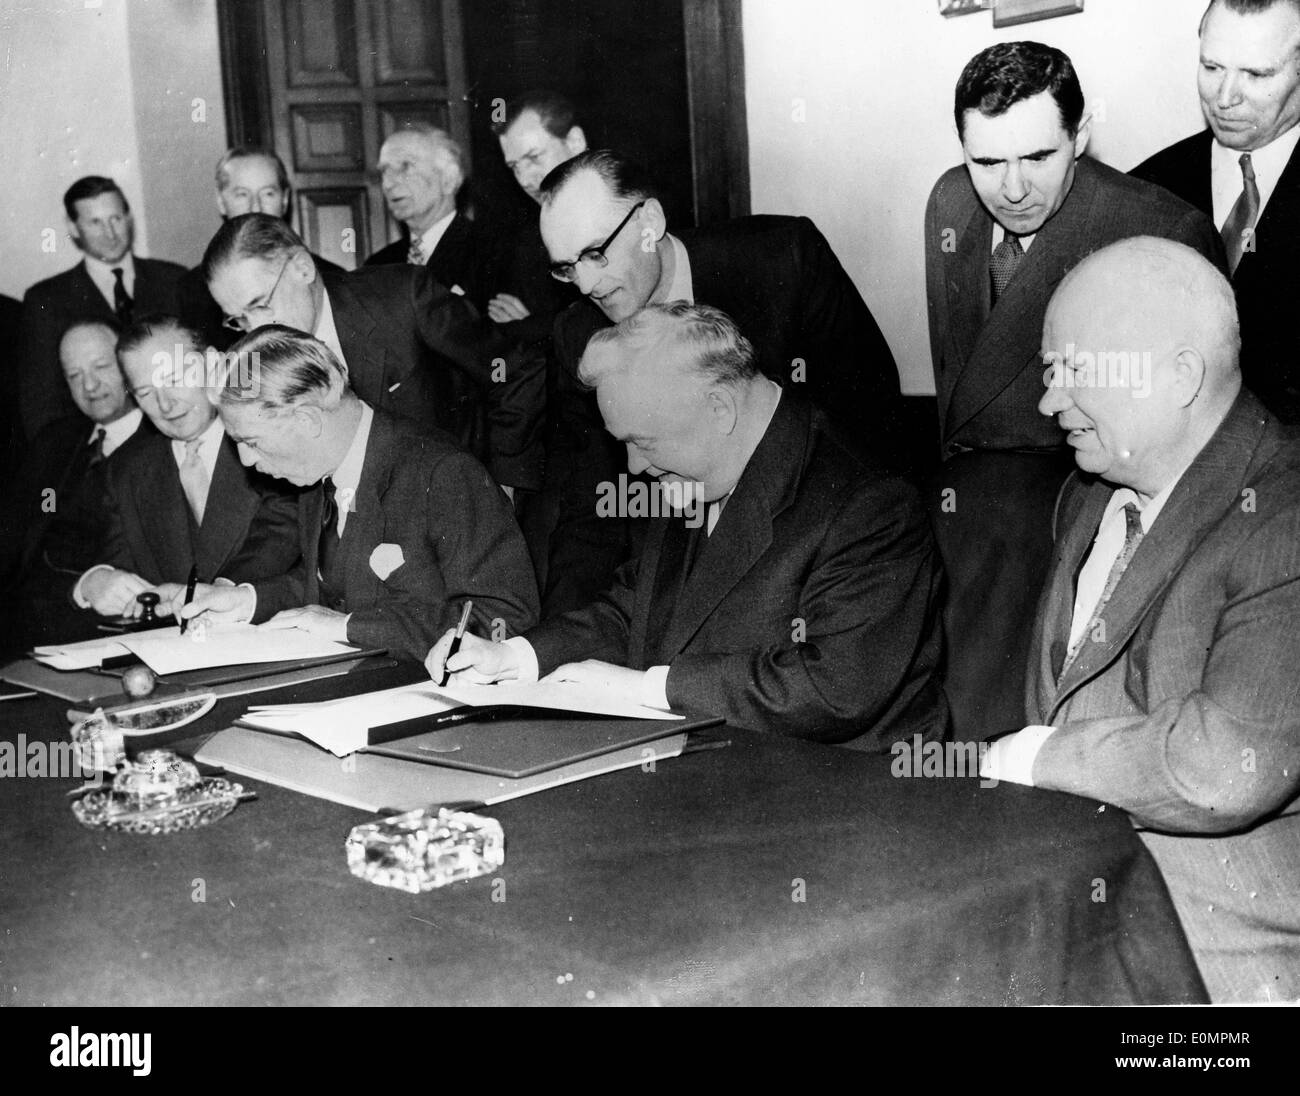 Premier ministre Nikita Khrouchtchev et d'autres documents Signature Banque D'Images